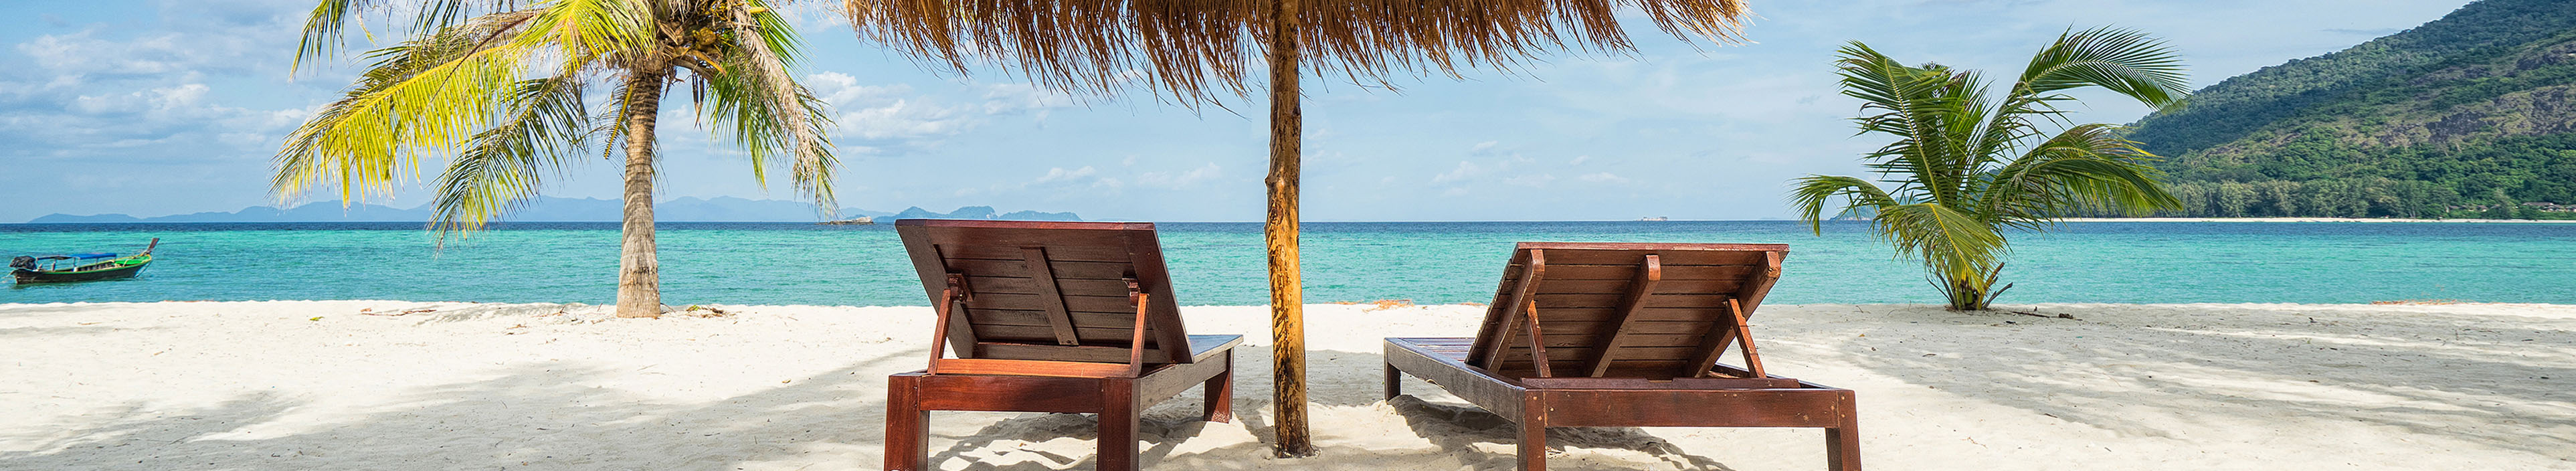 Liegestühle und ein Sonnenschirm an einem tropischem Strand